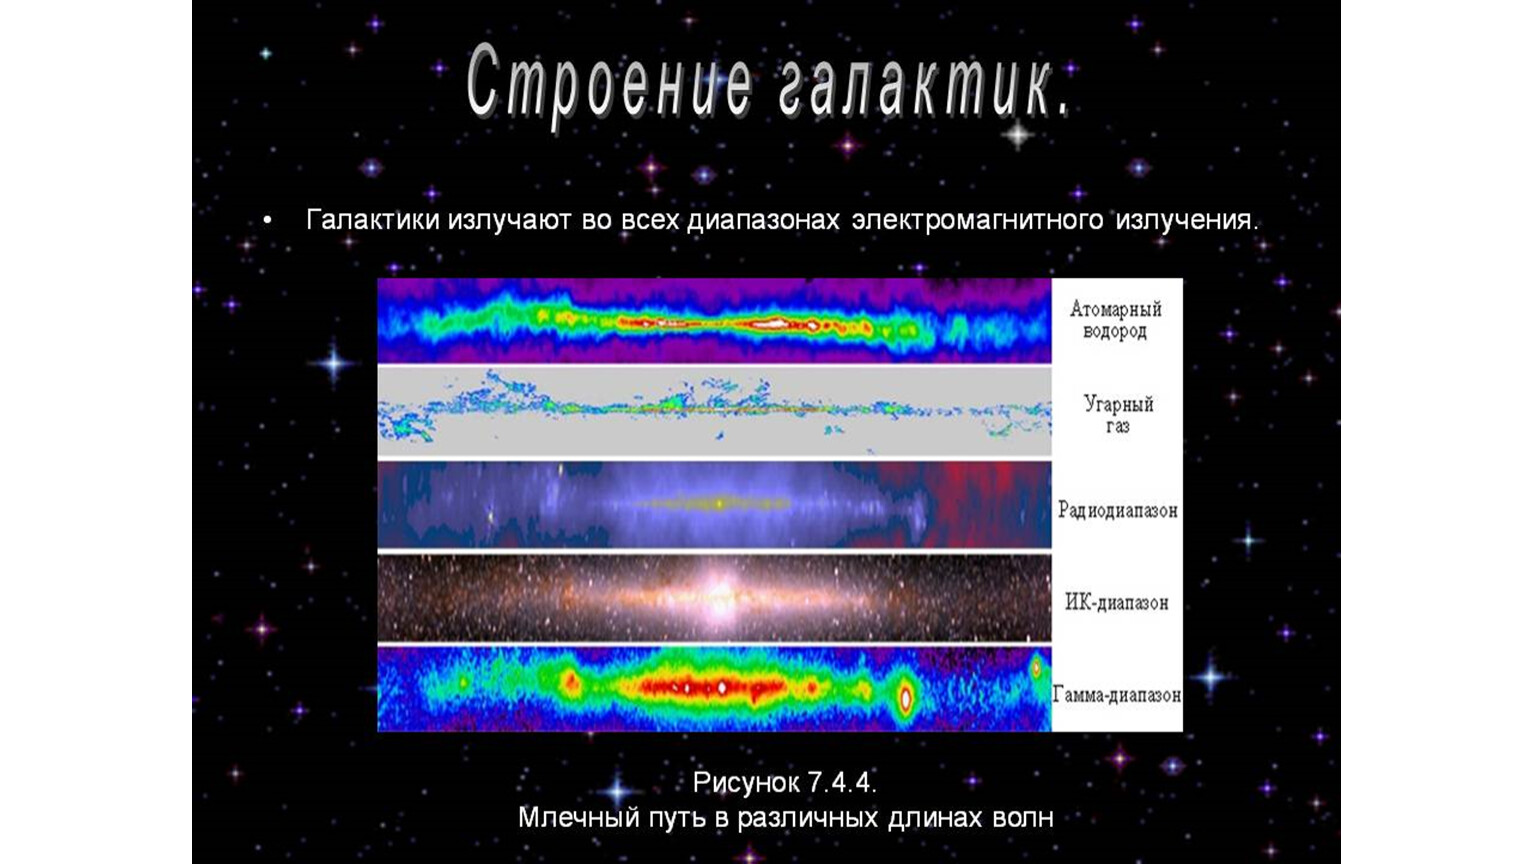 Какие источники радиоизлучения в нашей галактике